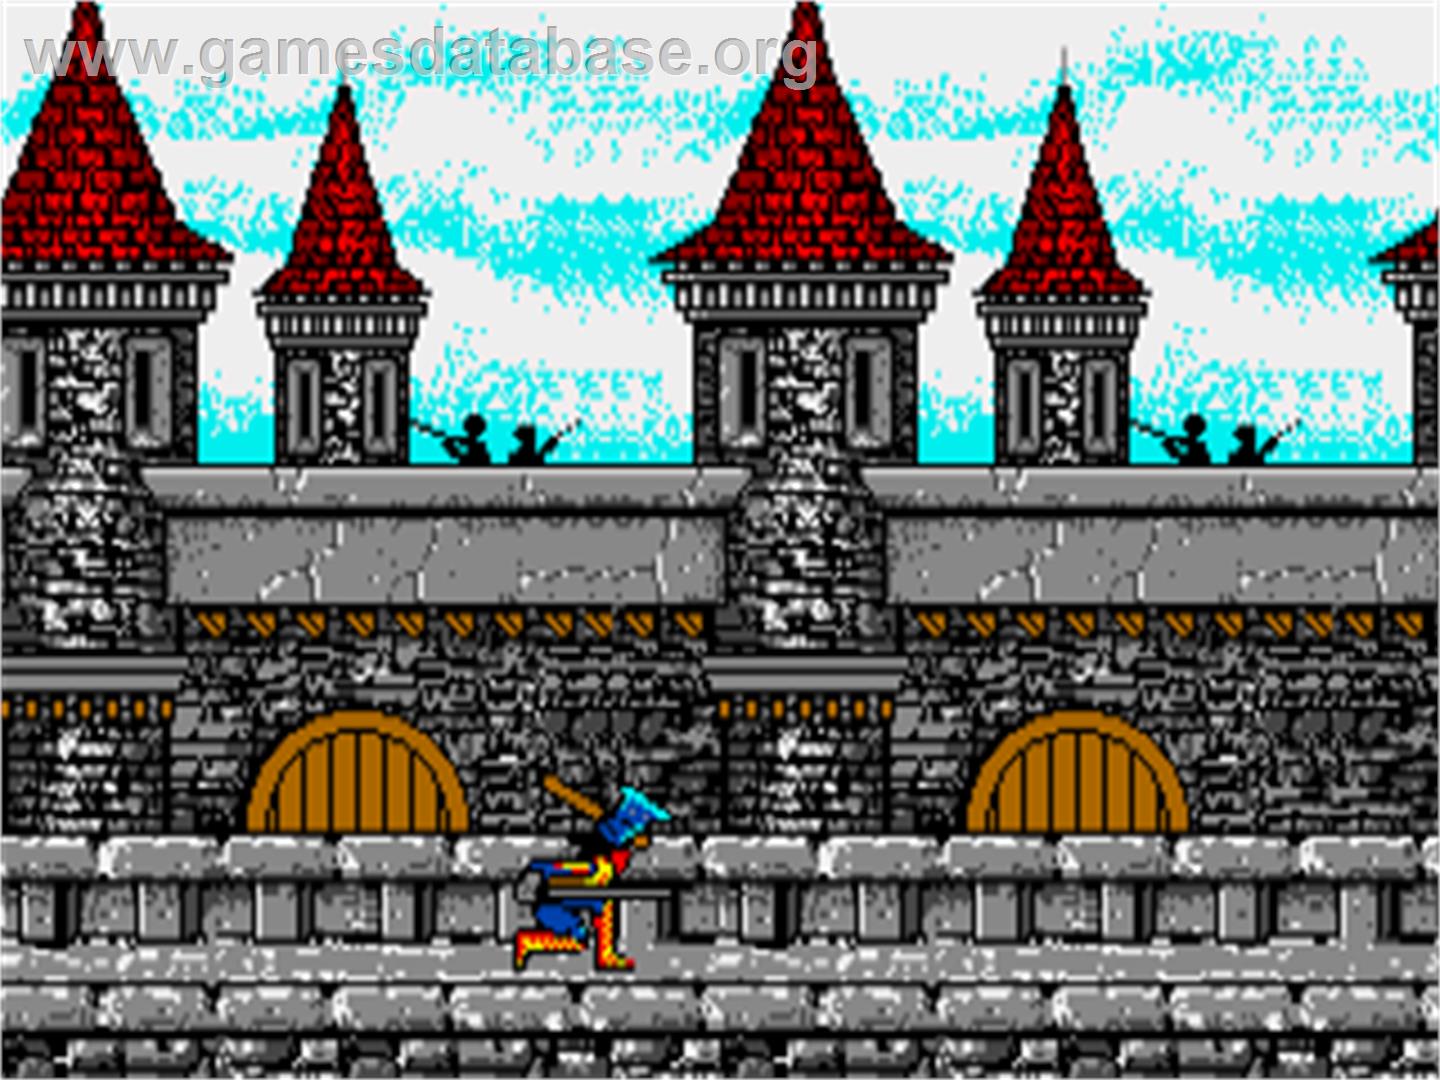 Willow - Commodore Amiga - Artwork - In Game